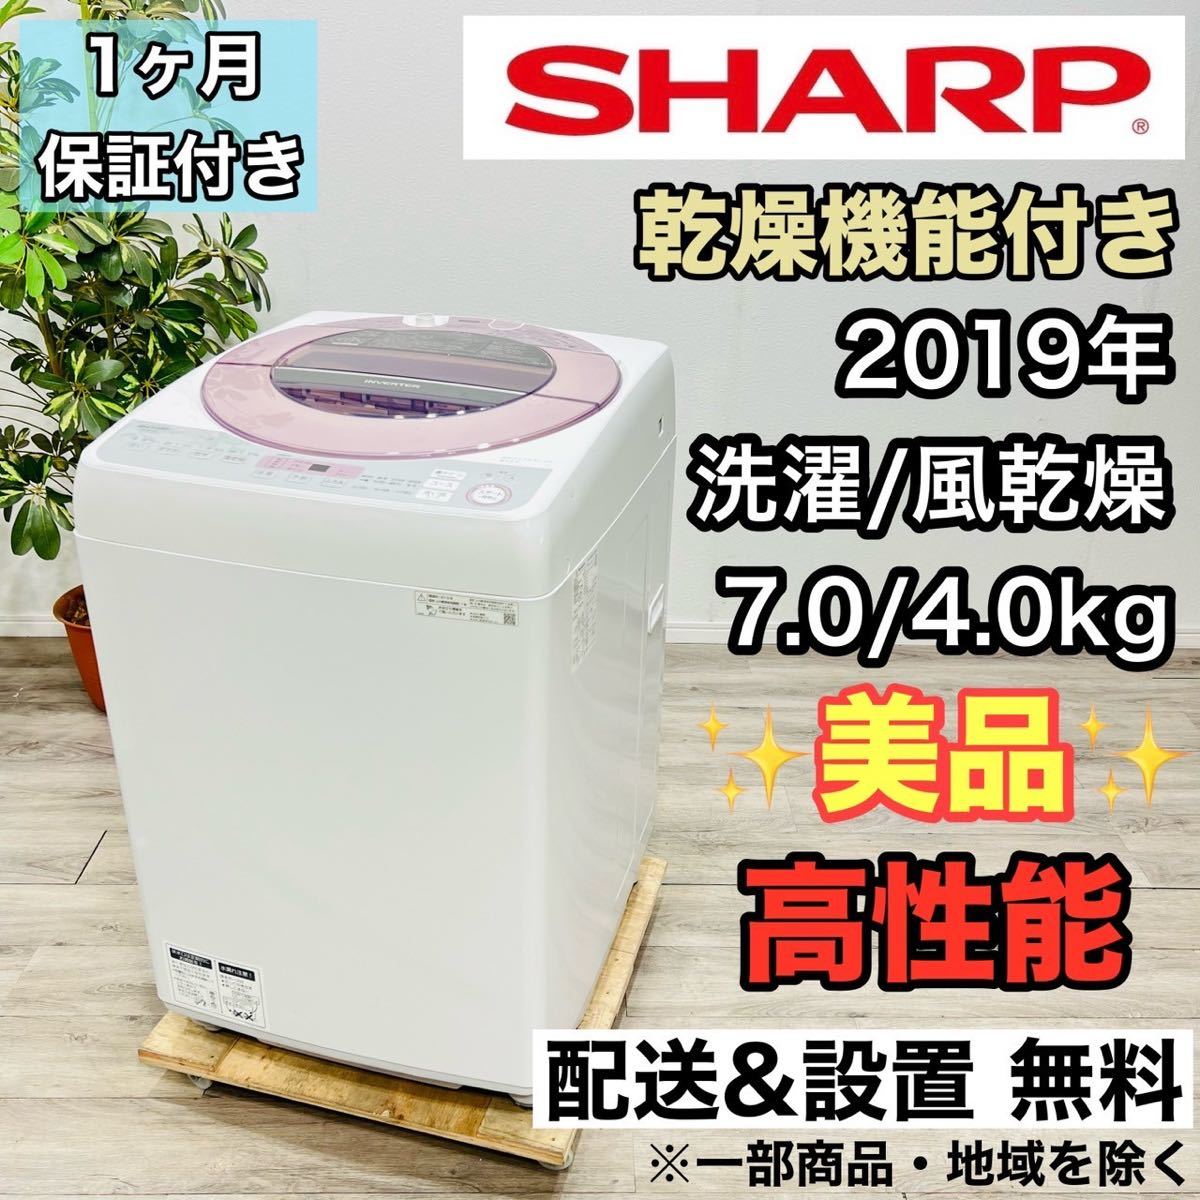 Sharp A1991 Стиральная машина 7,0 кг, сделанная в 2019 году 6